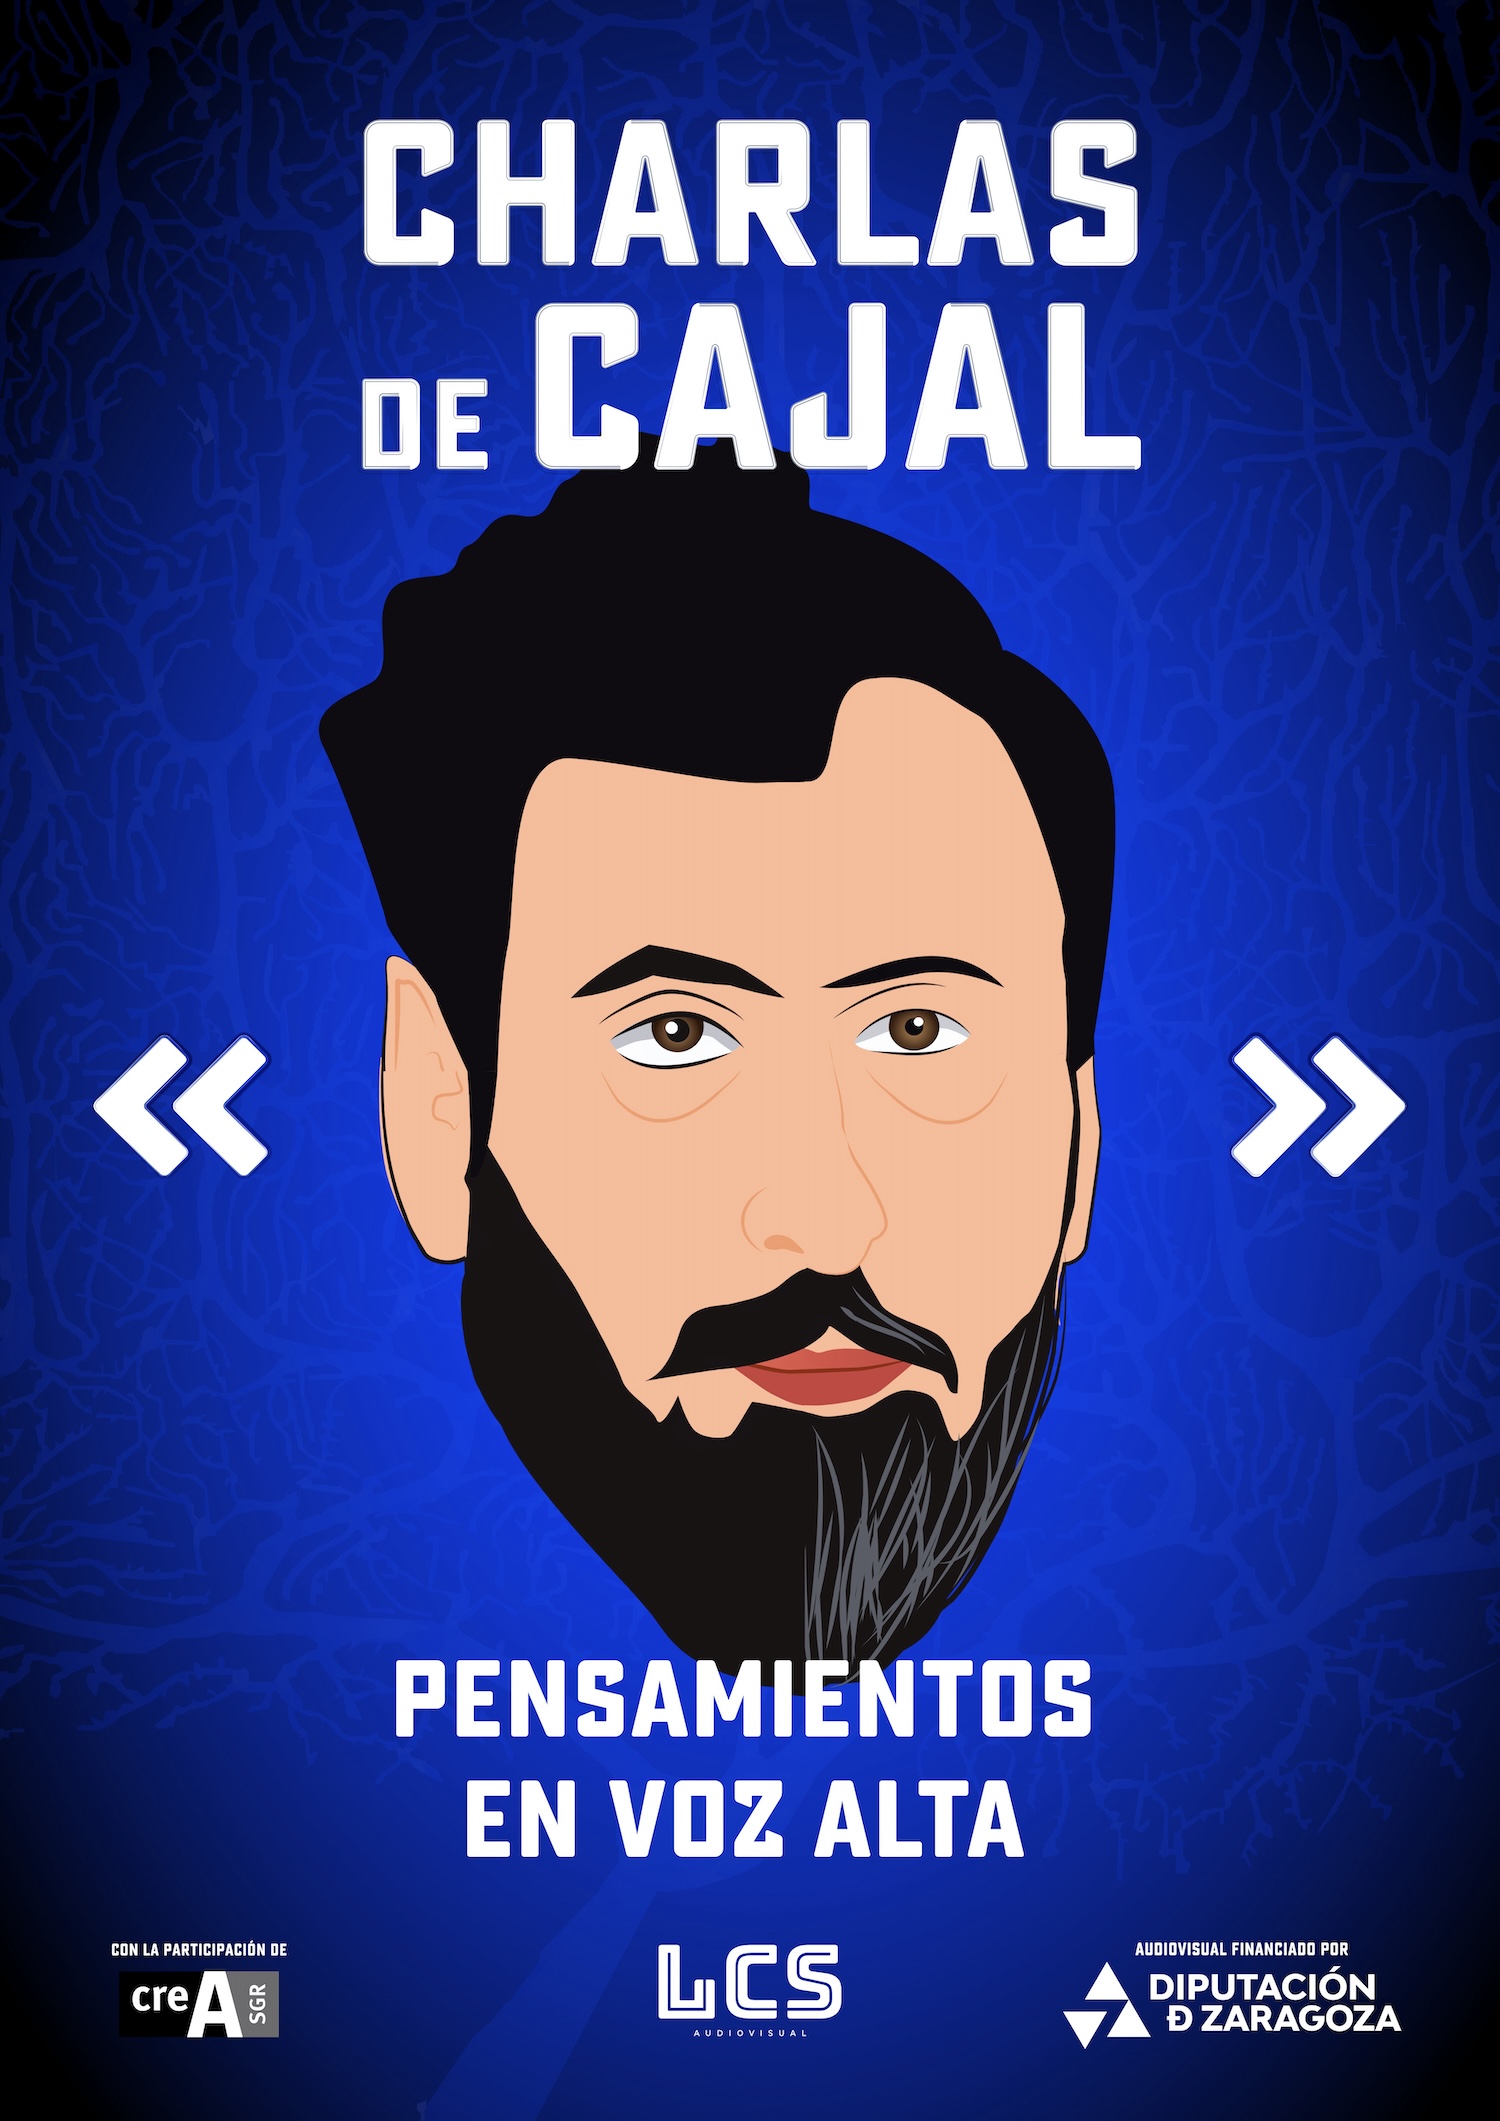 Cortometraje de Animación basado en Charlas de Café de Santiago Ramón y Cajal